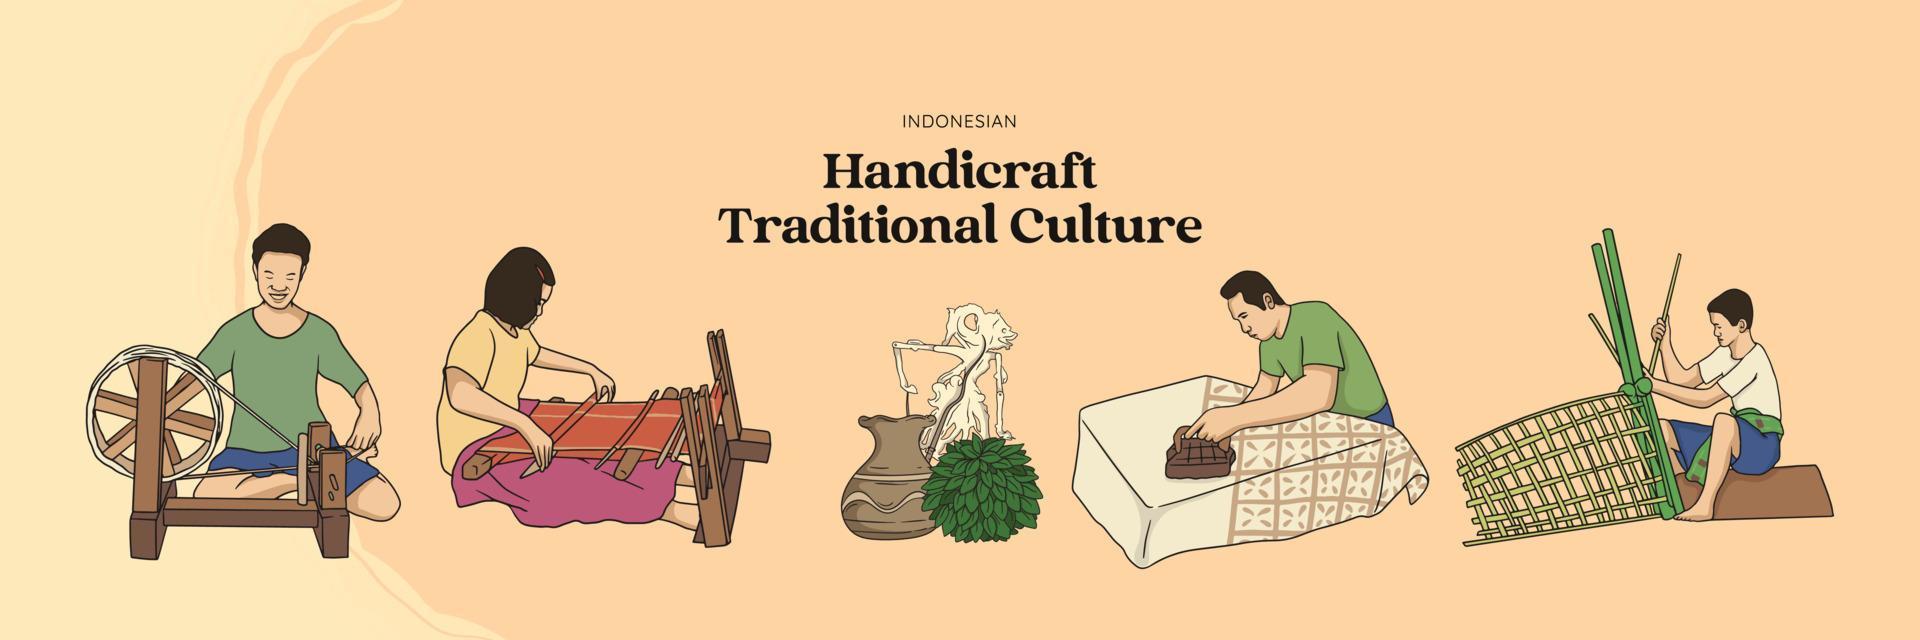 cultura tradicional de artesanato isolado mão desenhada. artesão tecelão, bambu e batik vetor